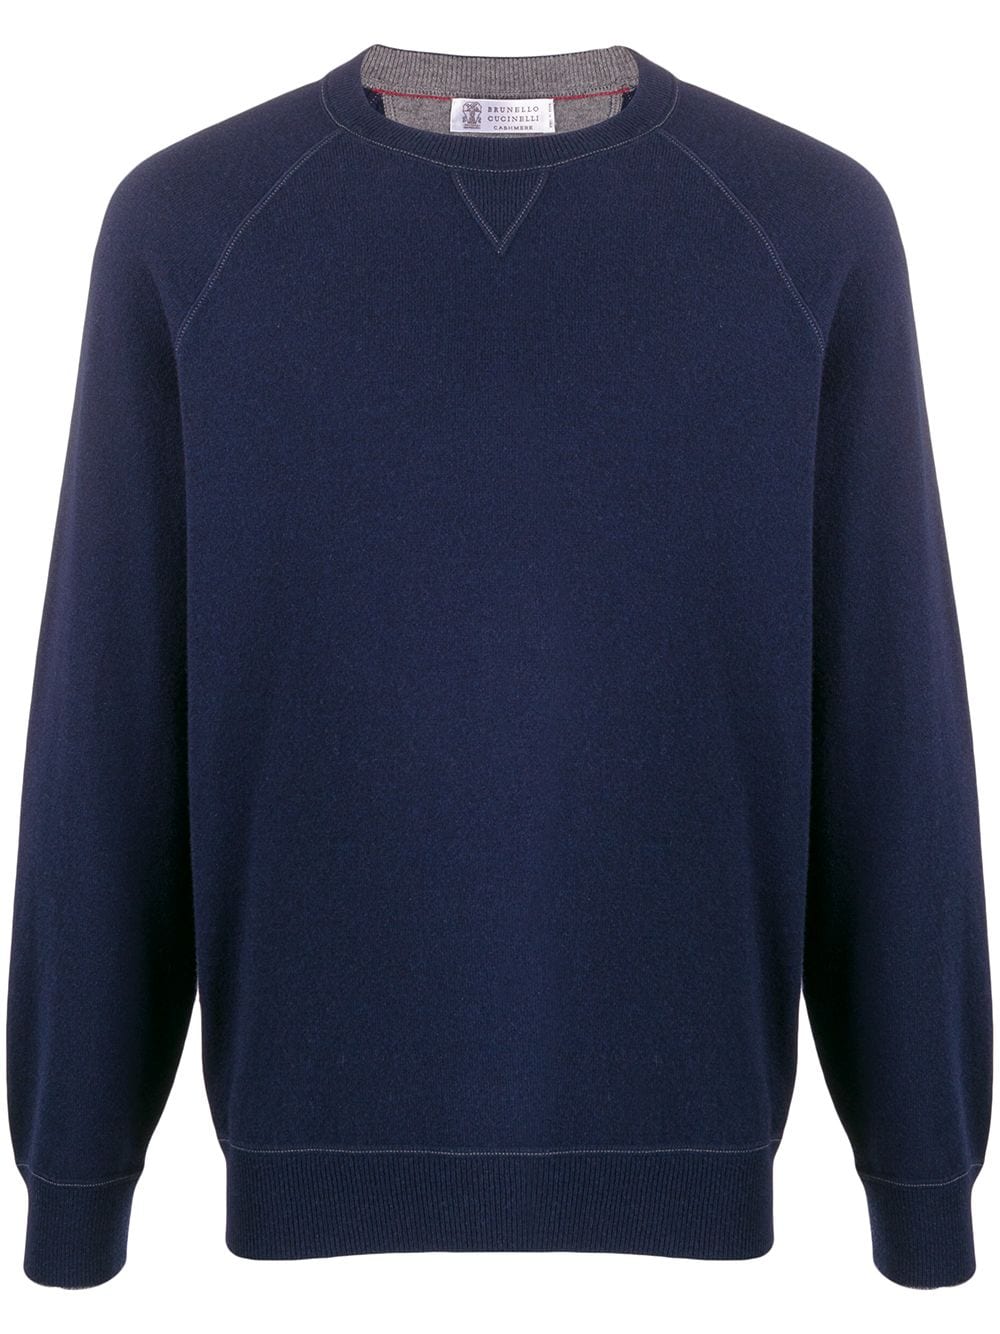 [HEP] 22FW 브루넬로쿠치넬리 파인 남성니트 스웨터 M3609218